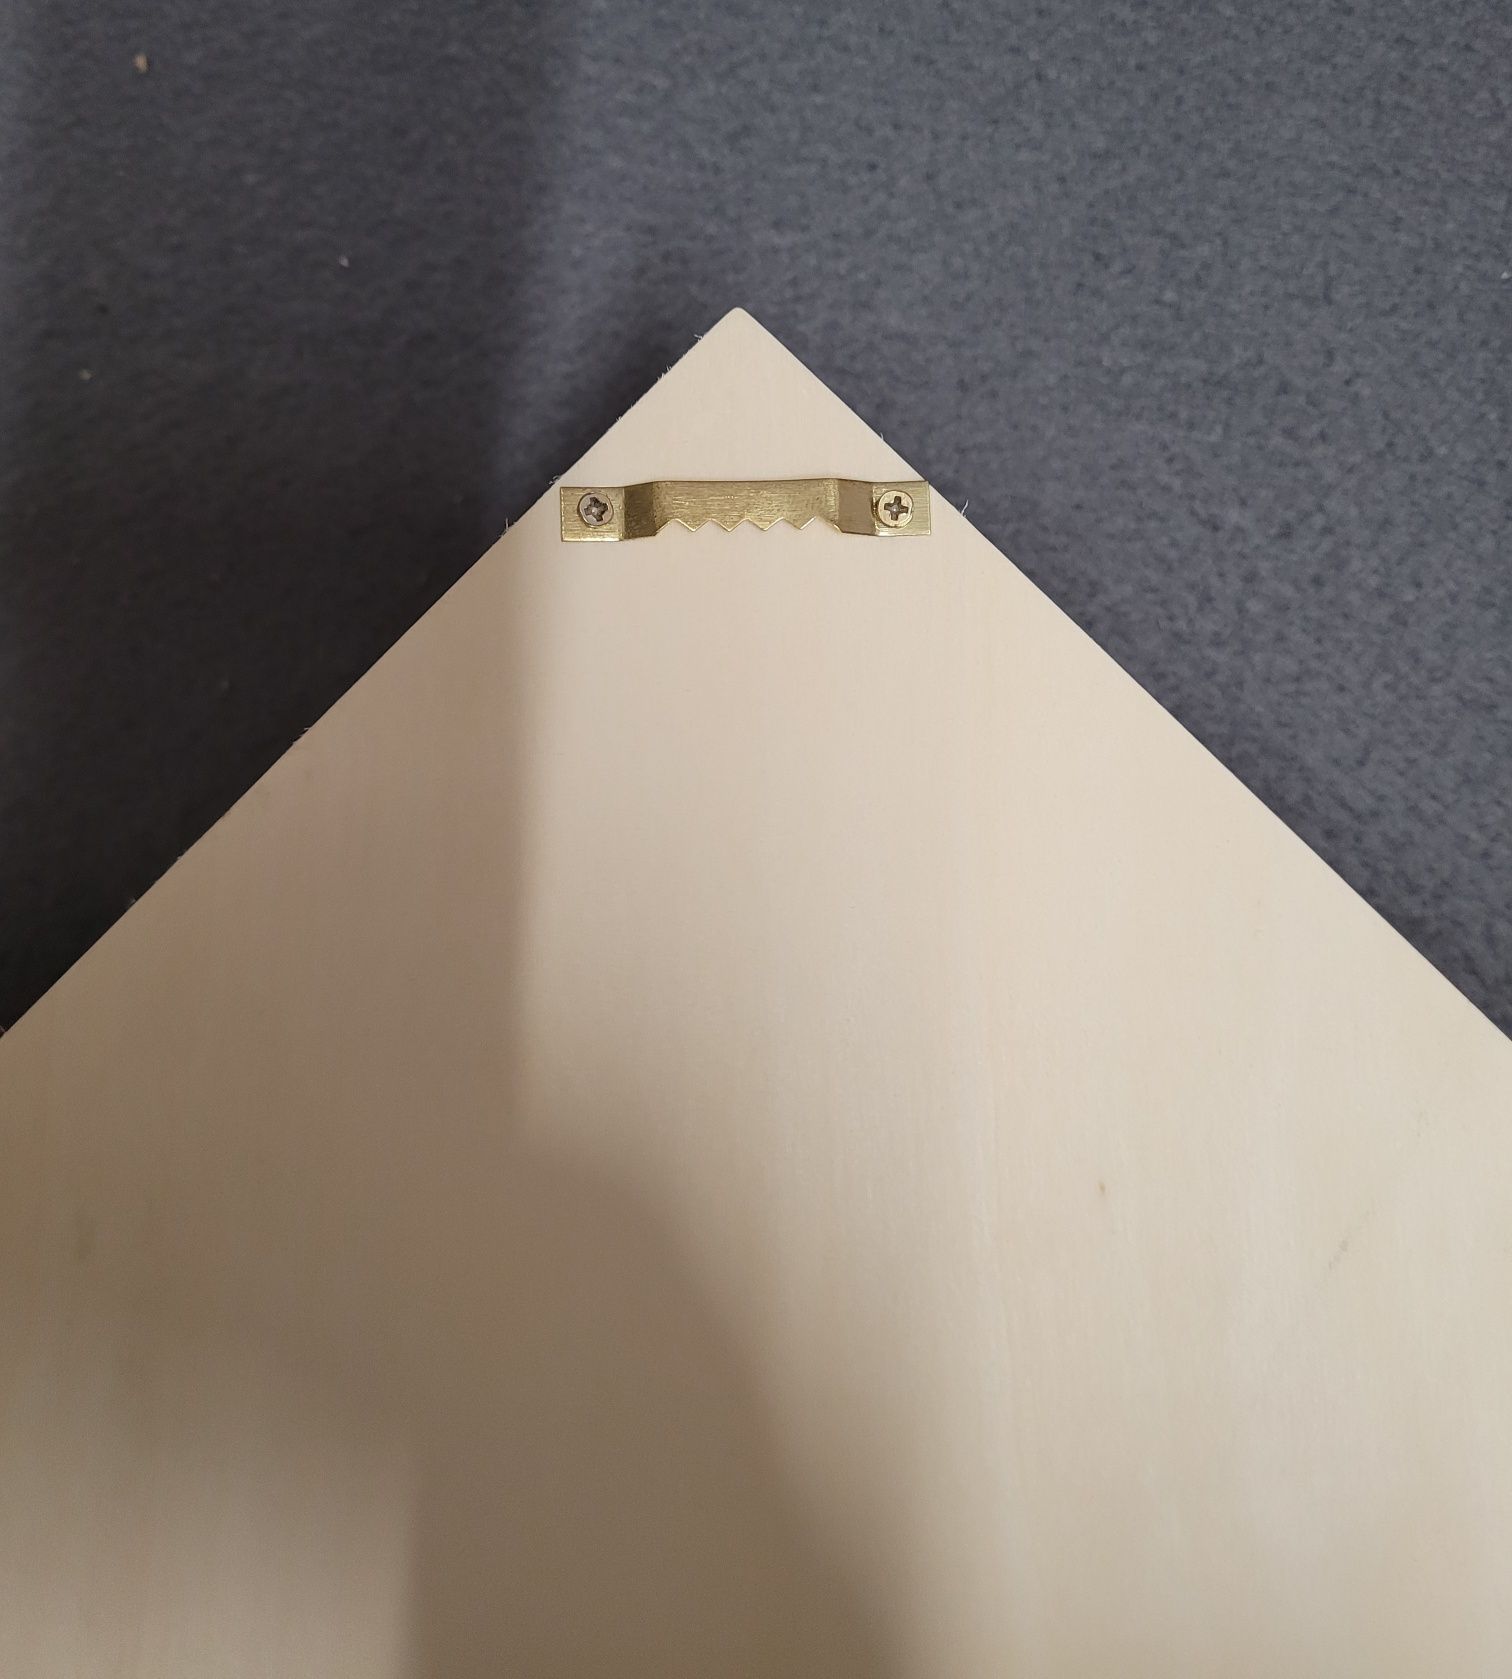 Skrzynka z drewna półka do zawieszenia, 30 x 50 x 8 cm, 8 przegródek.